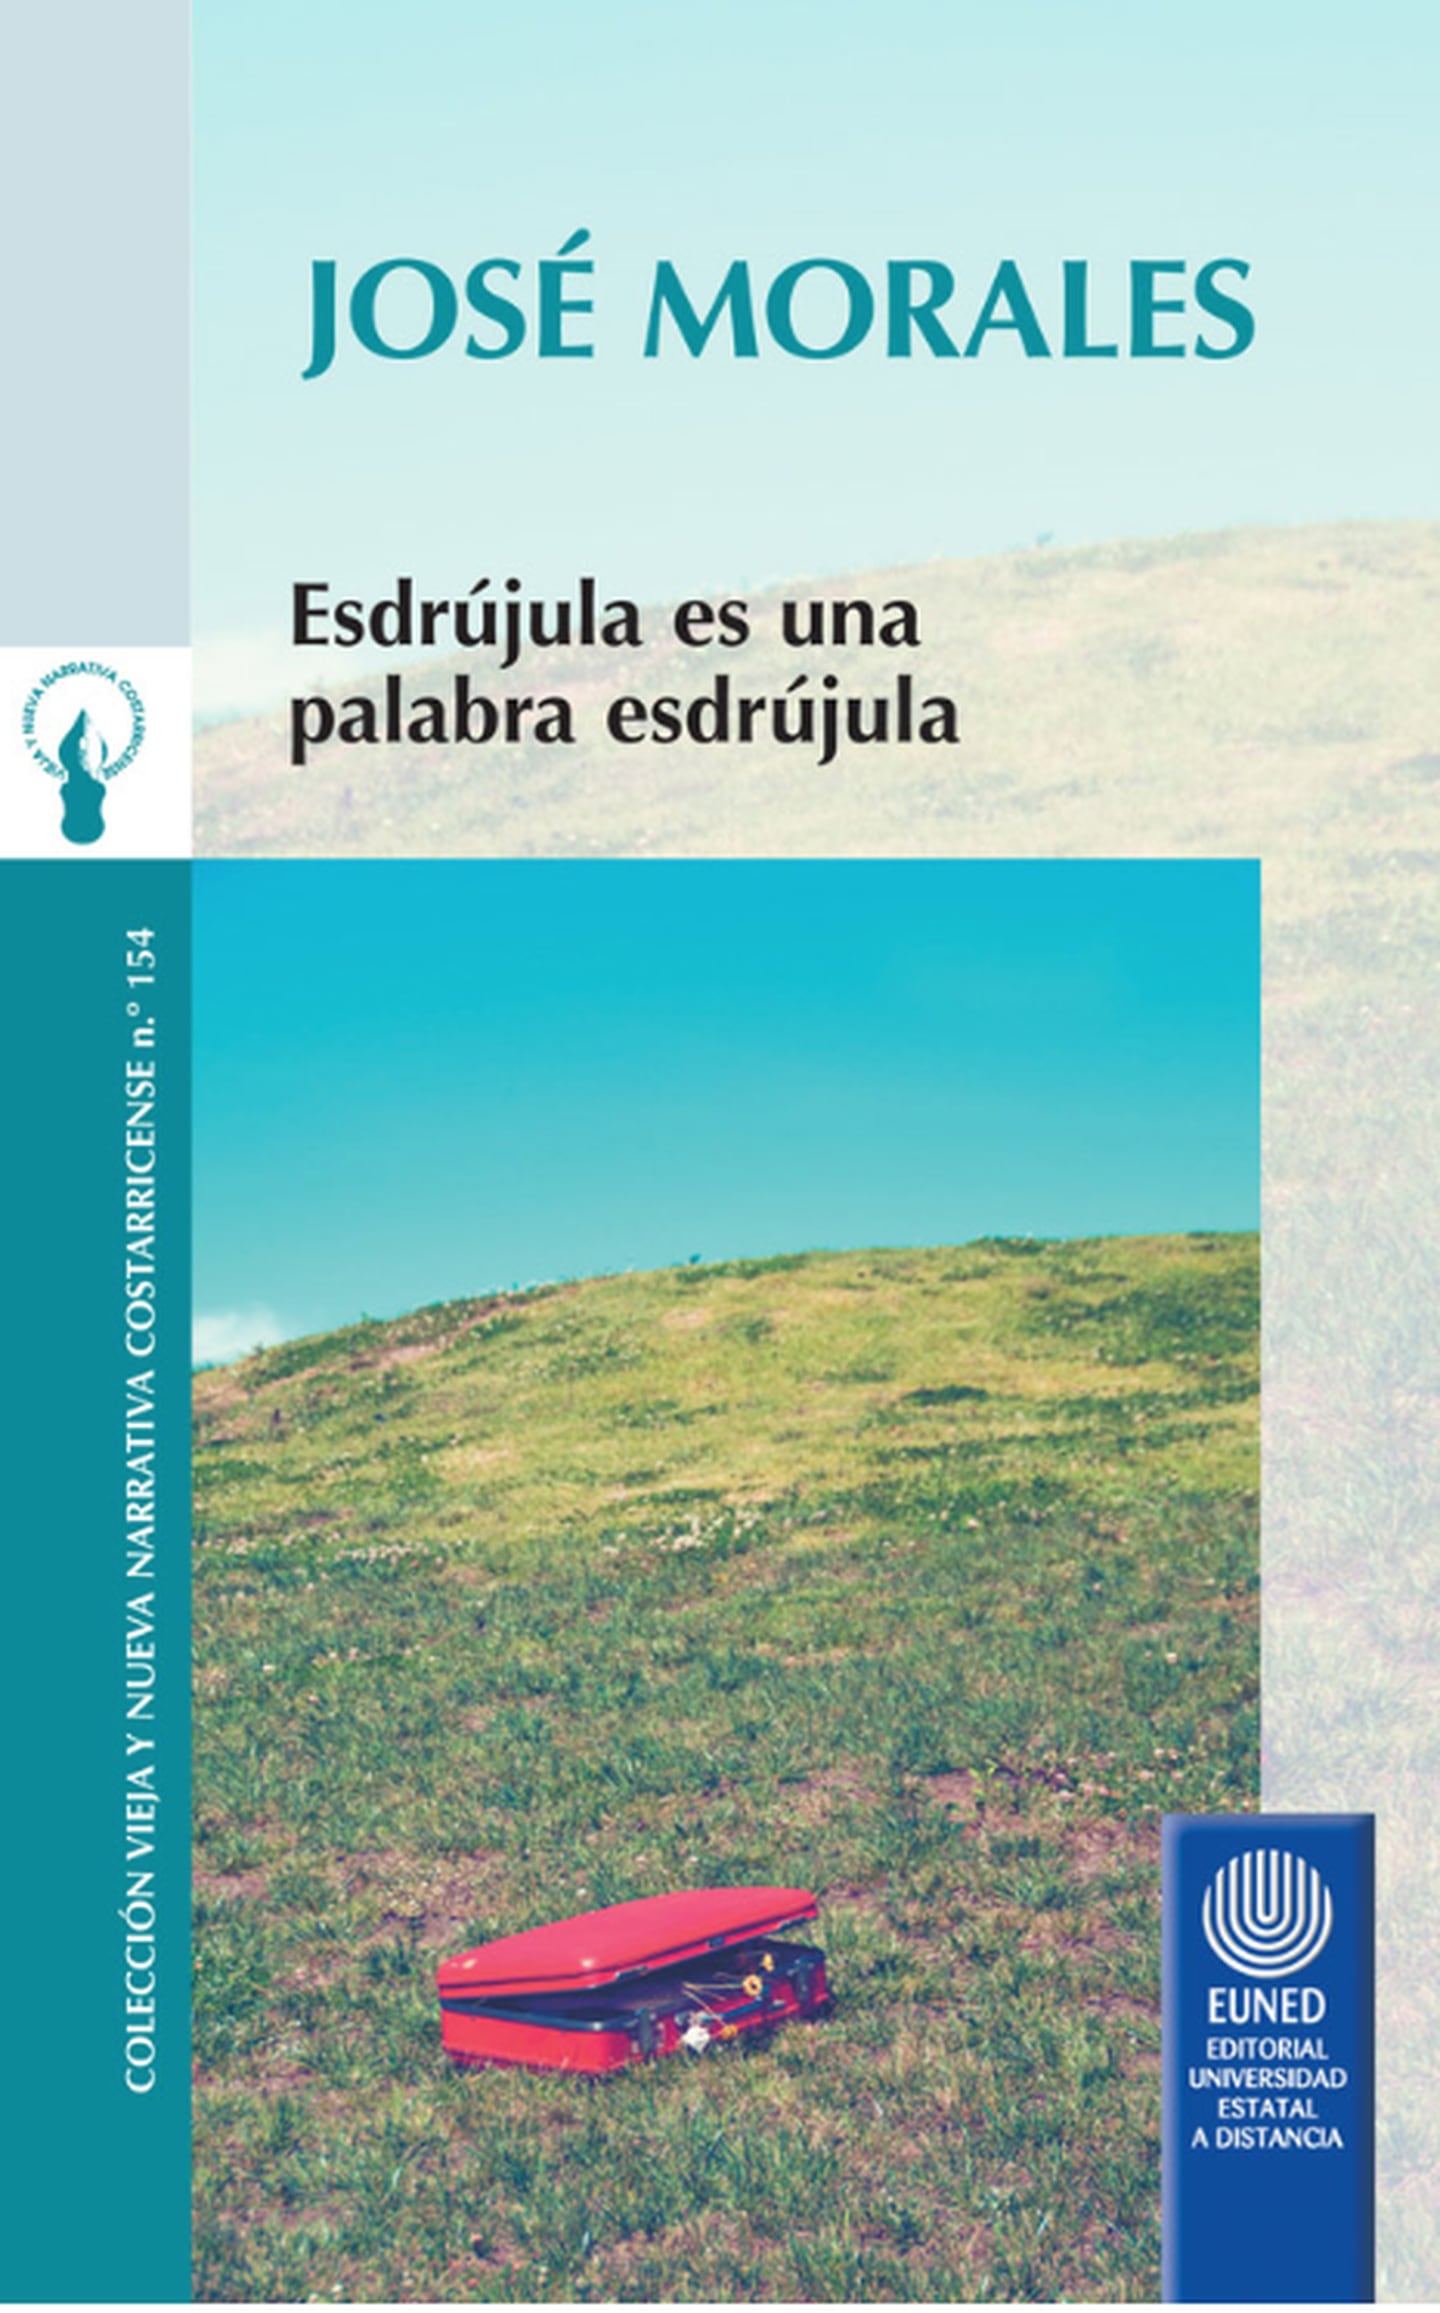 Esdrújula es una palabra esdrújula (EUNED, 2013) es el primer libro de relatos publicado por José Morales González.